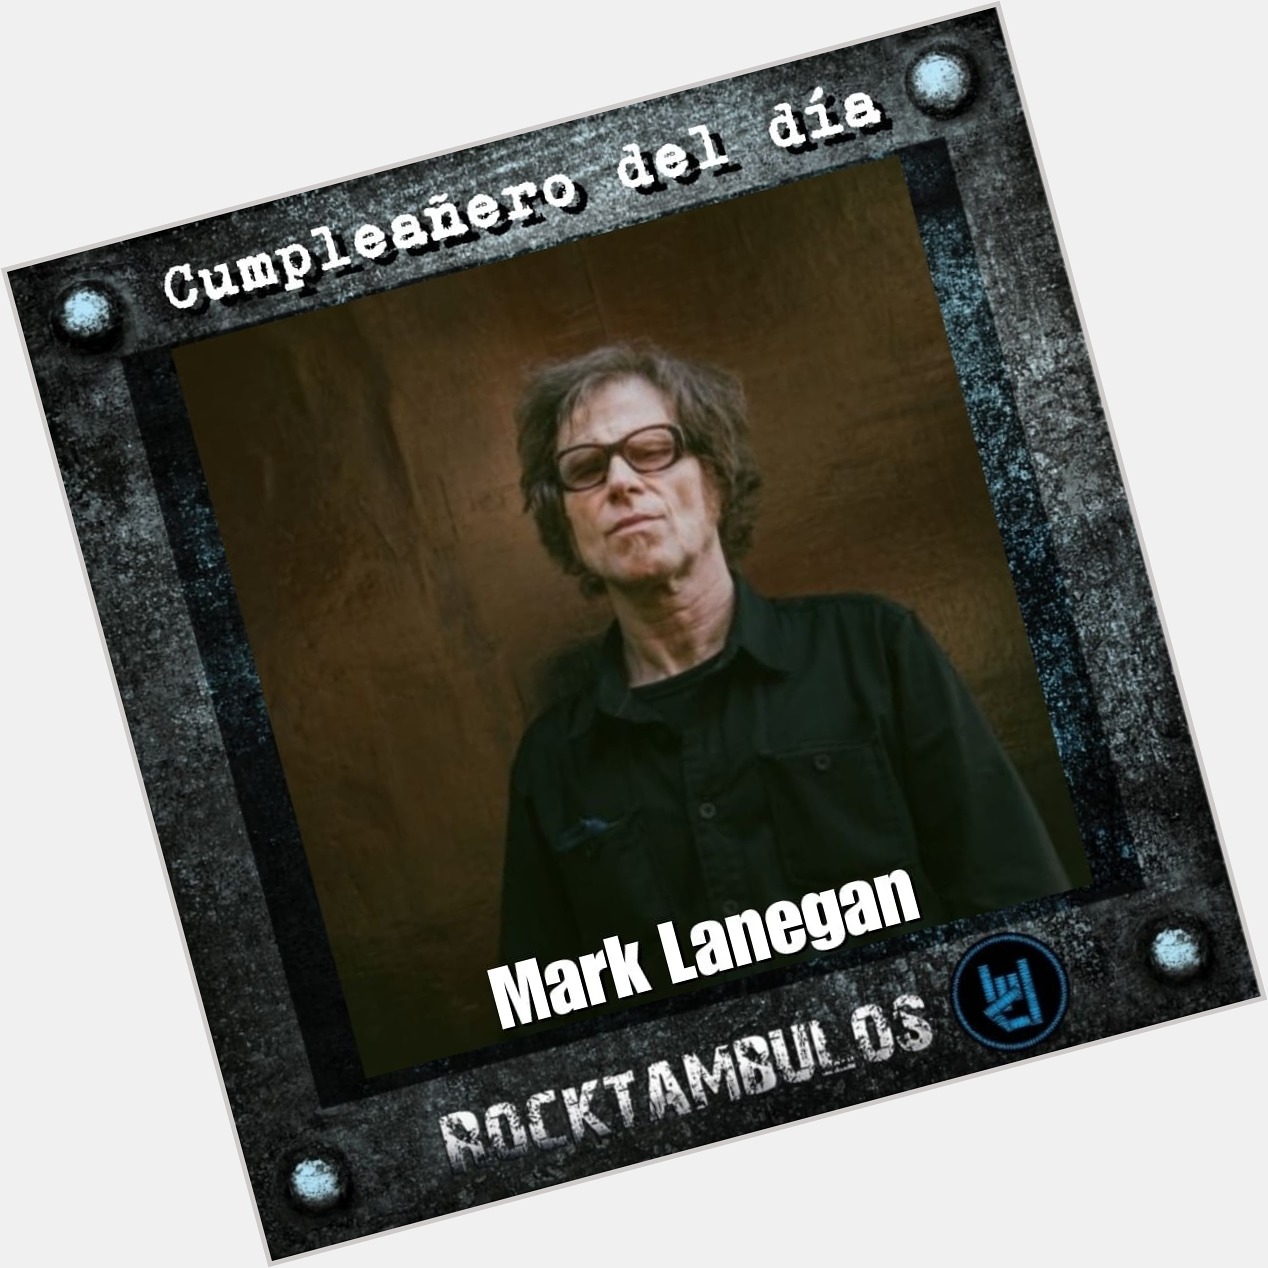 El legendario Mark Lanegan está de cumpleaños el día de hoy. Happy birthday Mark 